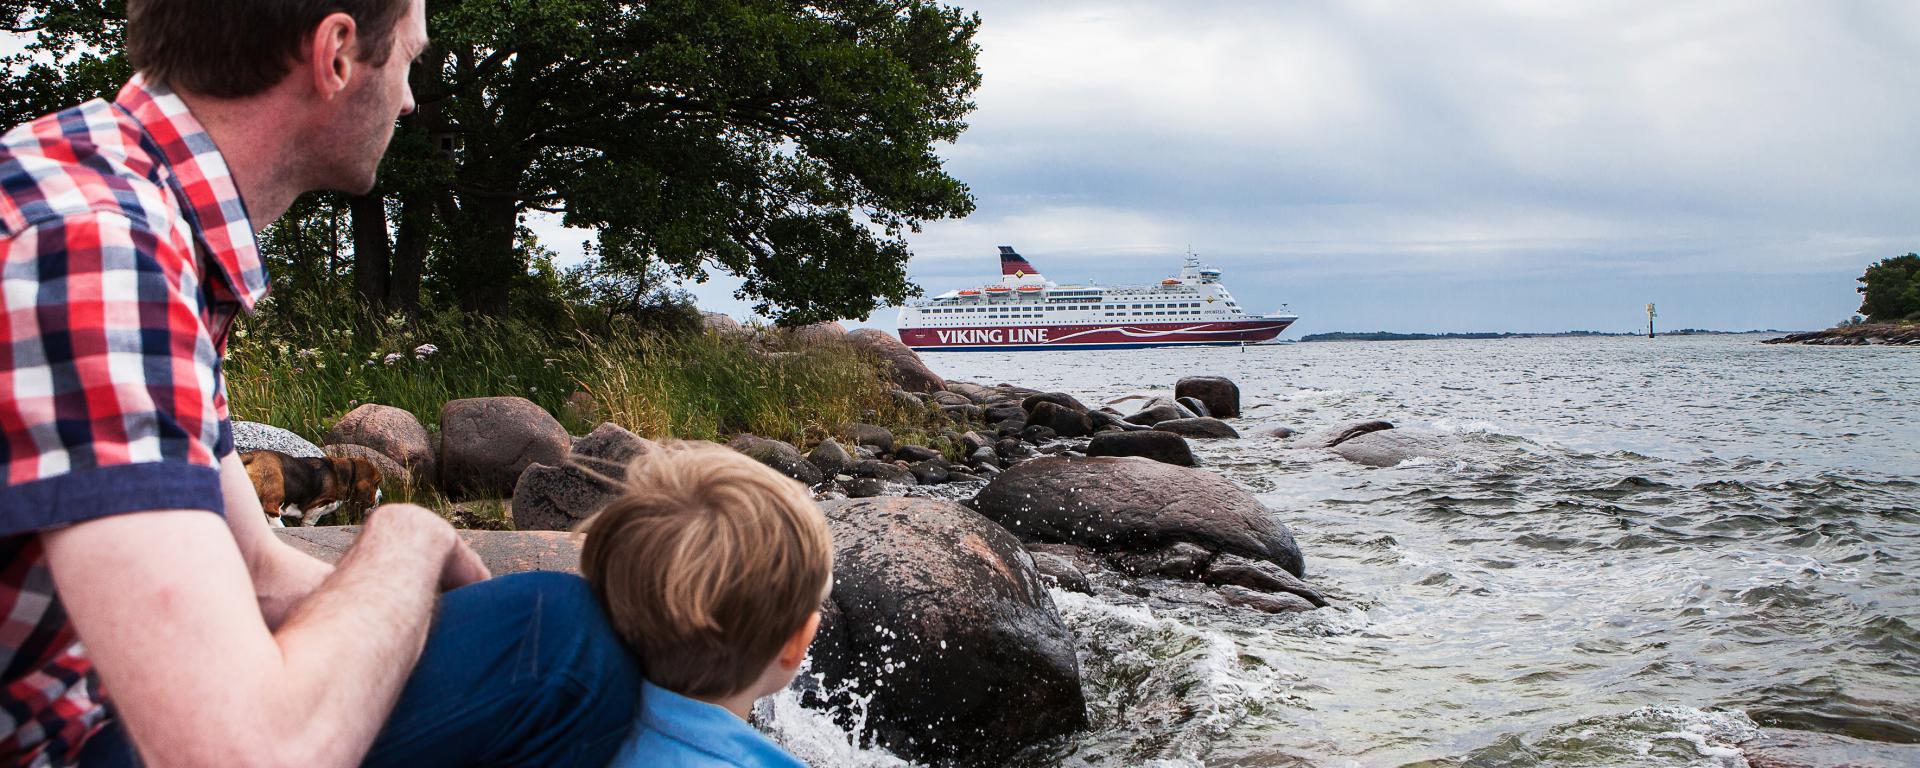 Pappa med barn tittar på när Viking Lines fartyg passerar stranden.